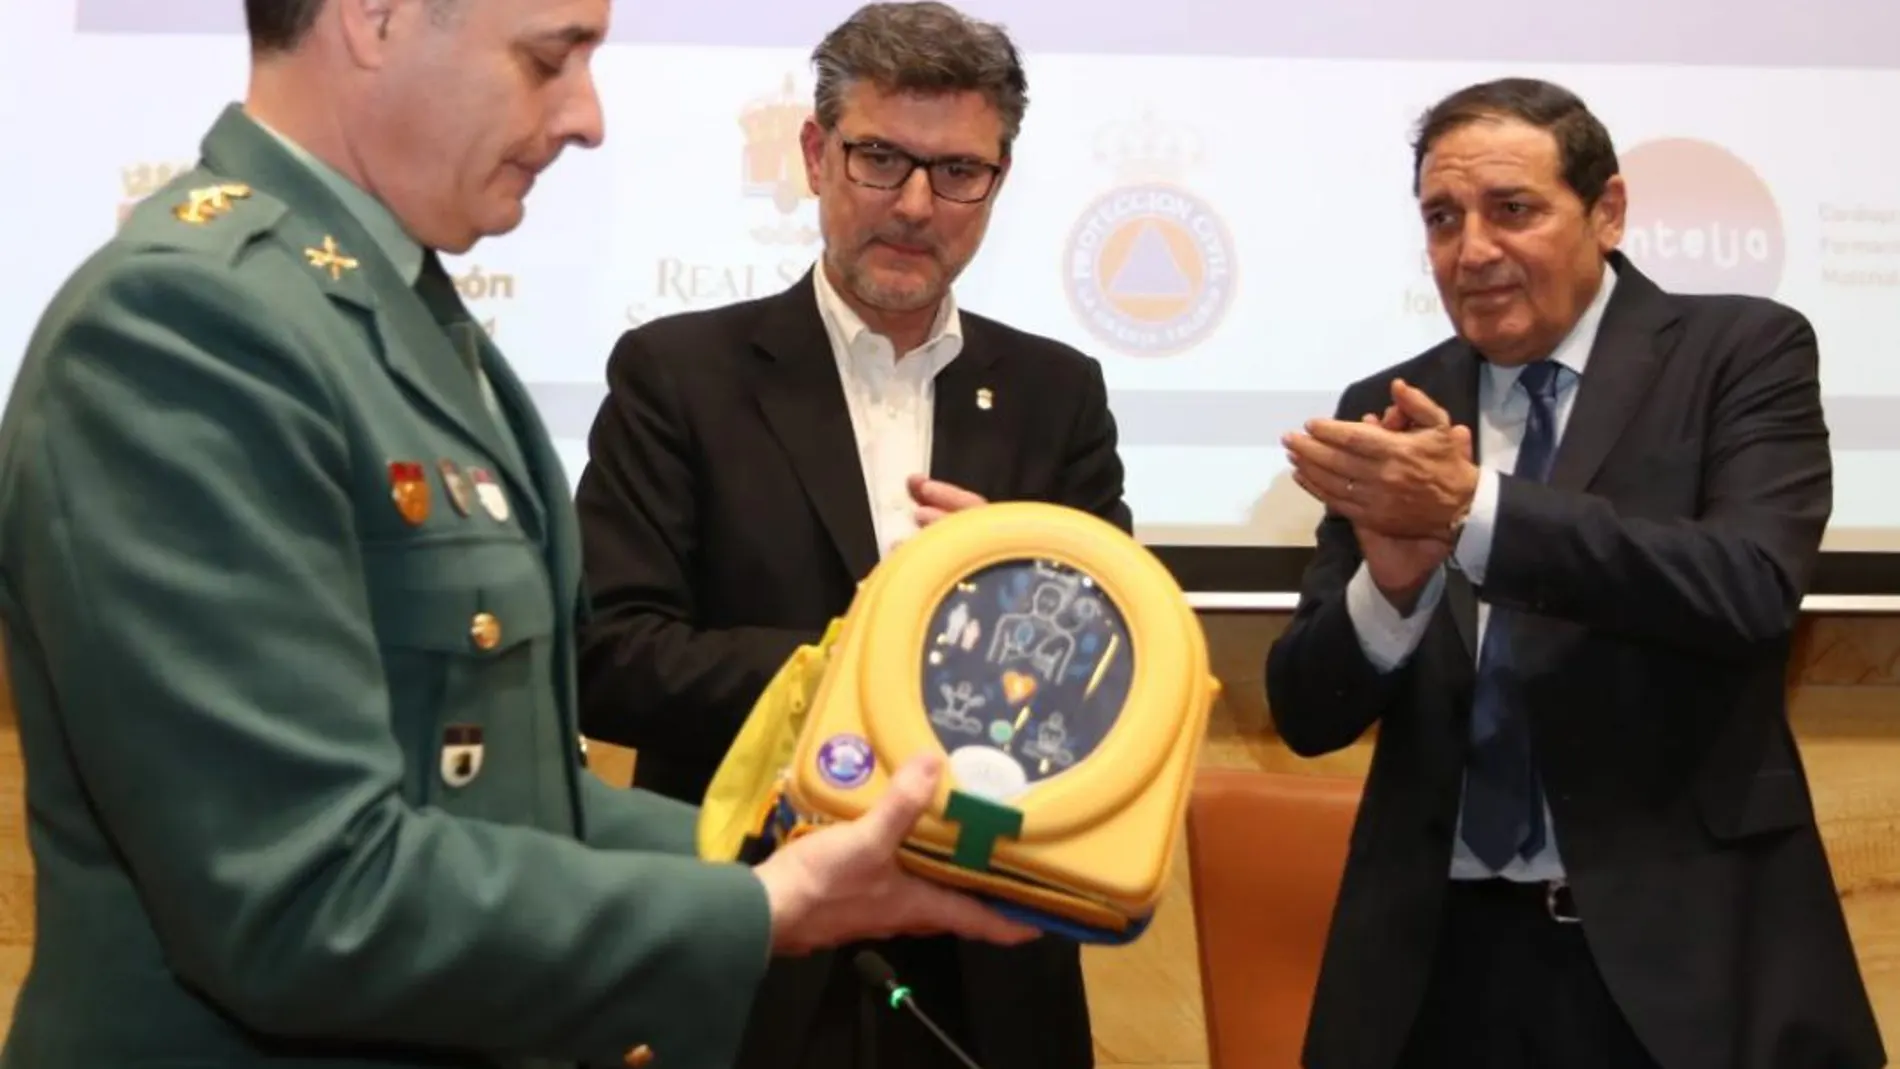 El consejero de Sanidad, Antonio María Sáez Aguado, y el alcalde de El Real Sitio, José Luis Vázquez, entregan uno de los diplomas